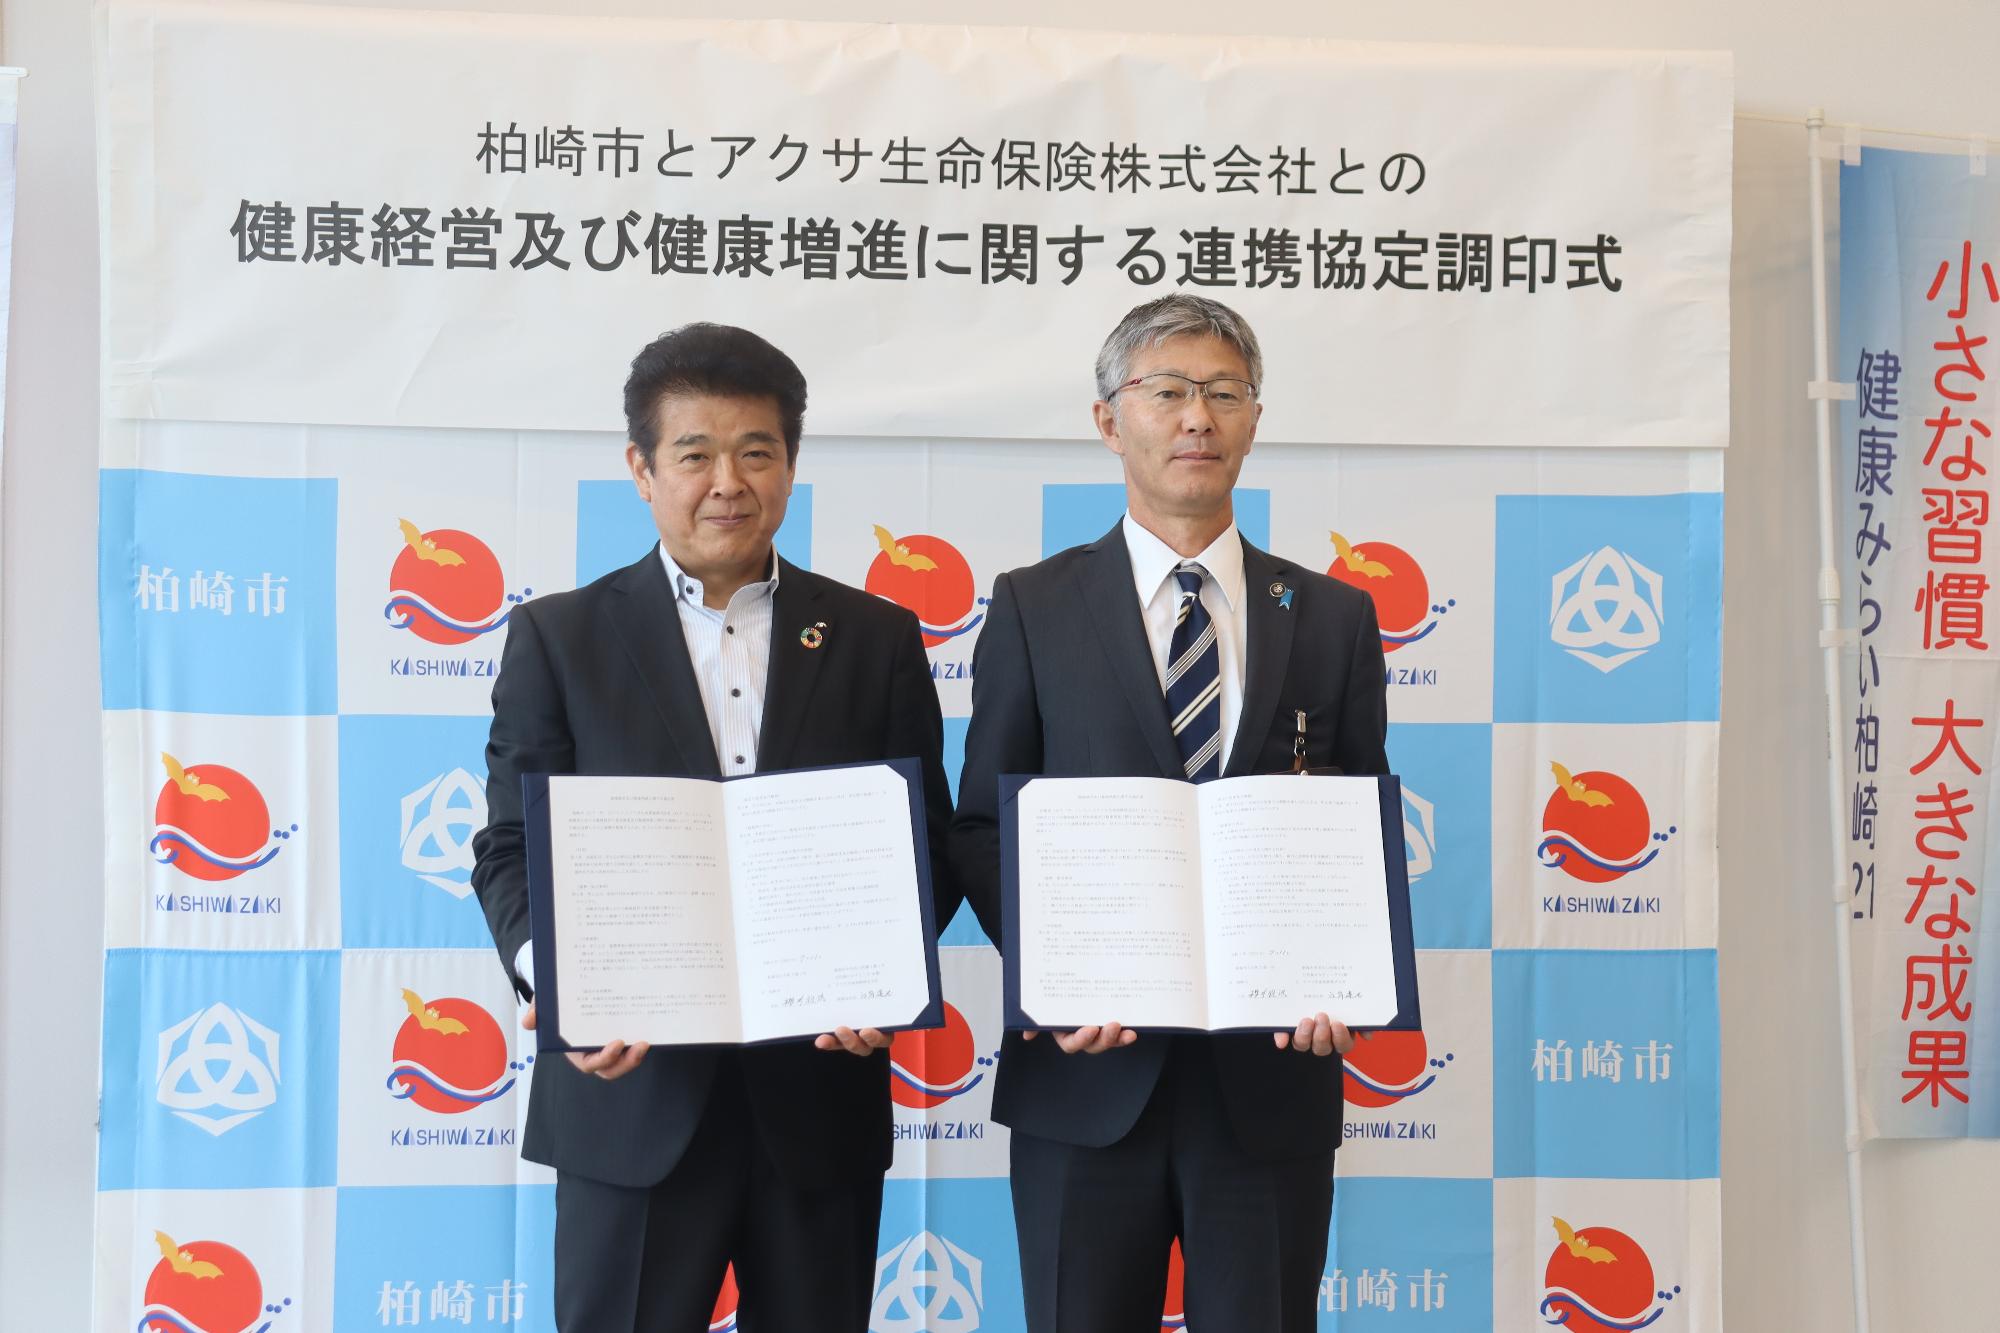 写真：桜井市長とアクサ生命保険株式会社の関係者が並んで、取り交わした協定書を胸の前に掲げています。